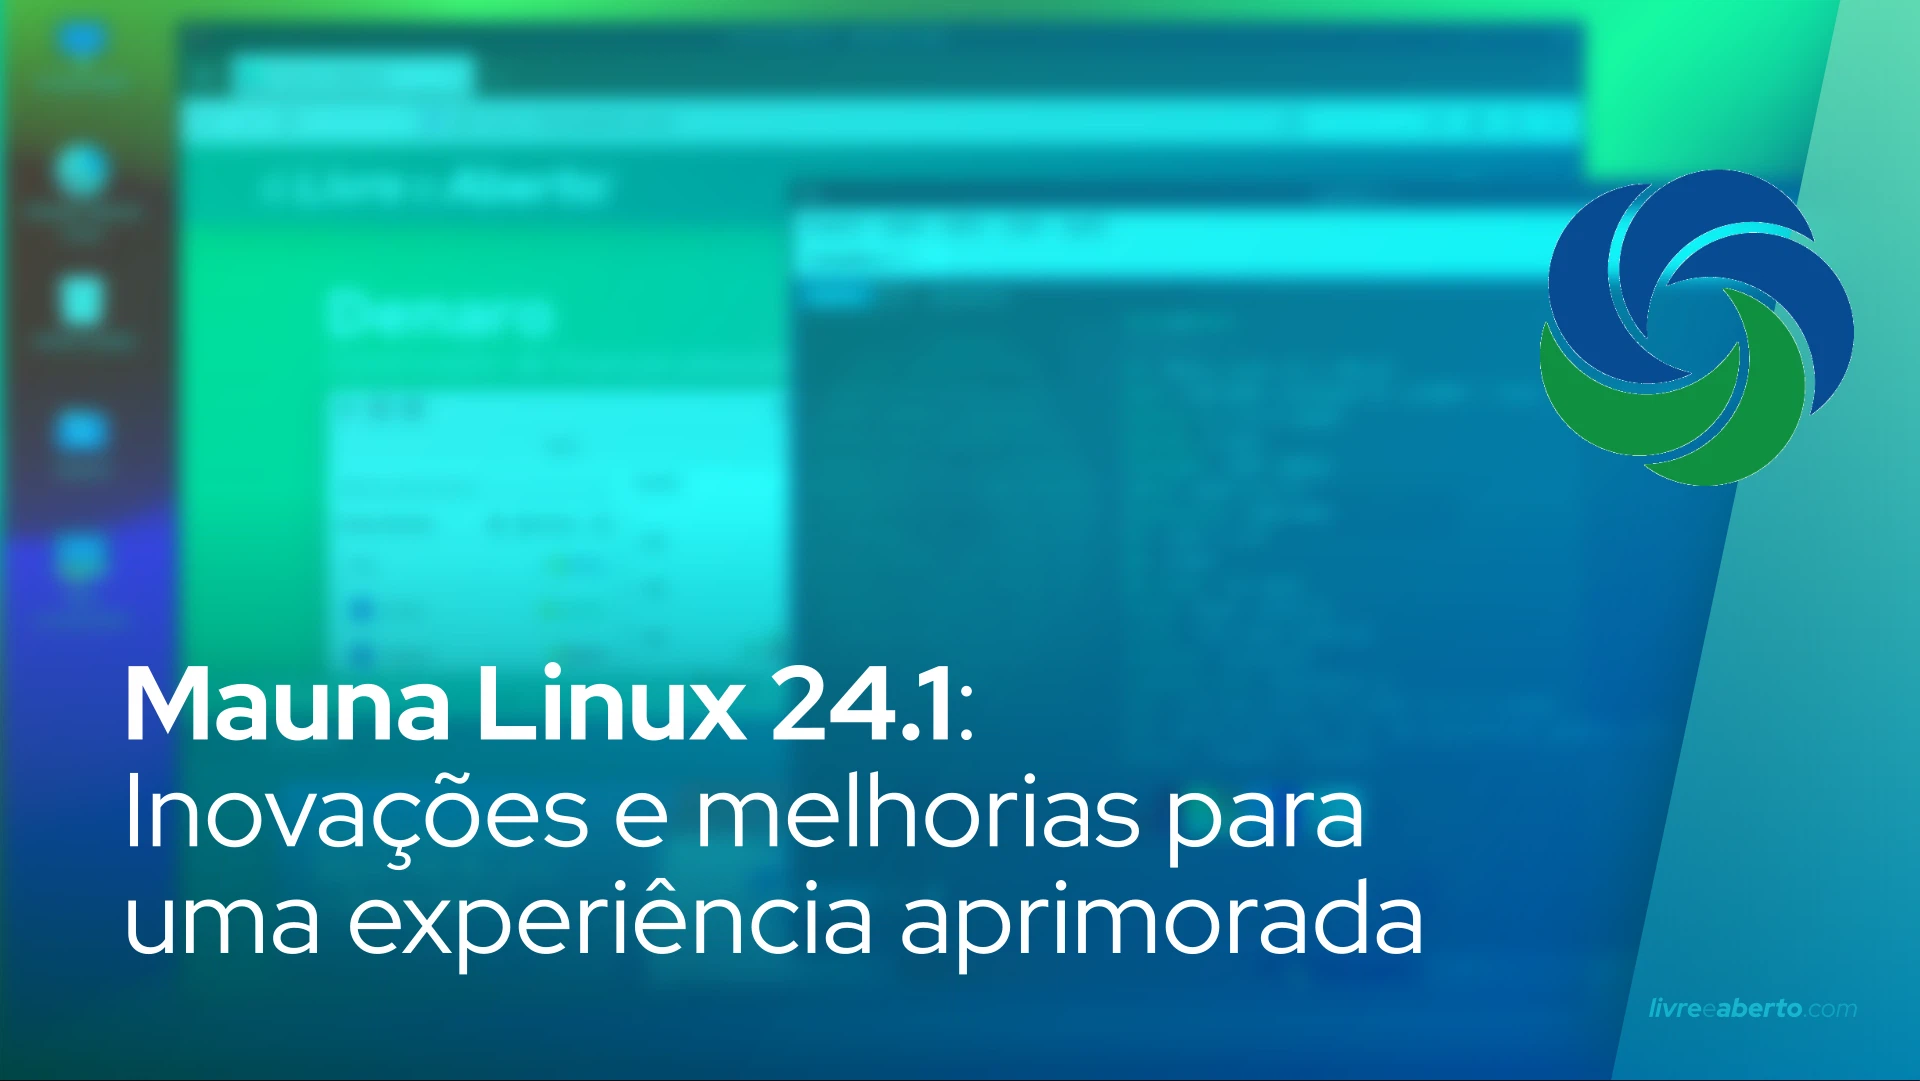 Mauna Linux 24.1: Inovações e melhorias para uma experiência aprimorada